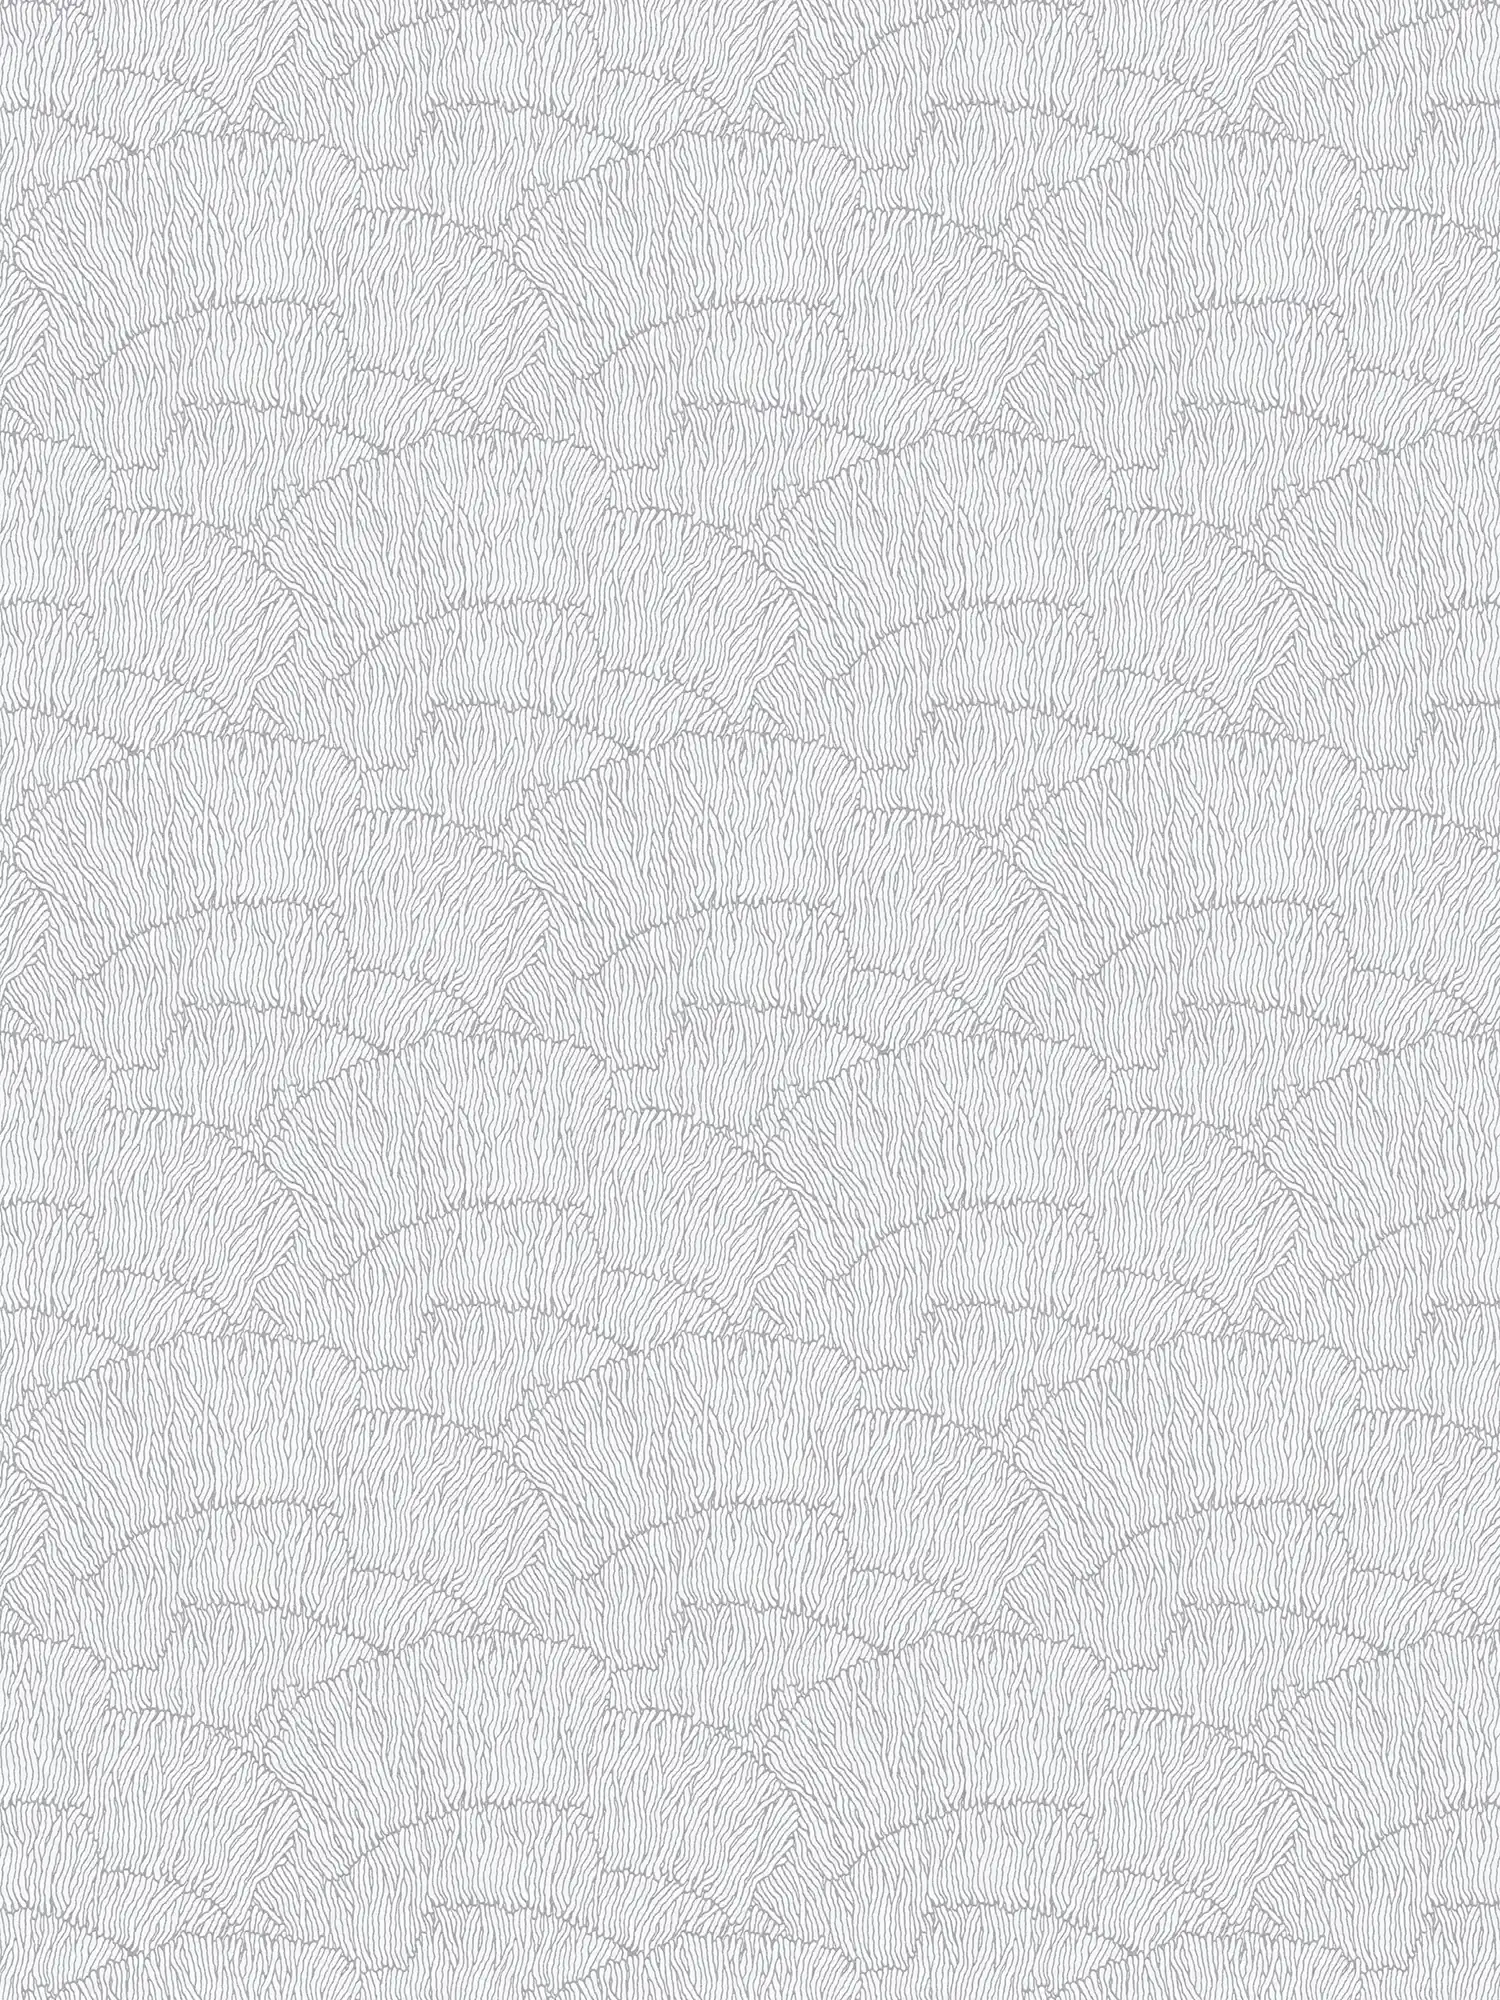 Carta da parati in tessuto non tessuto con motivo astratto - argento, bianco, metallizzato
